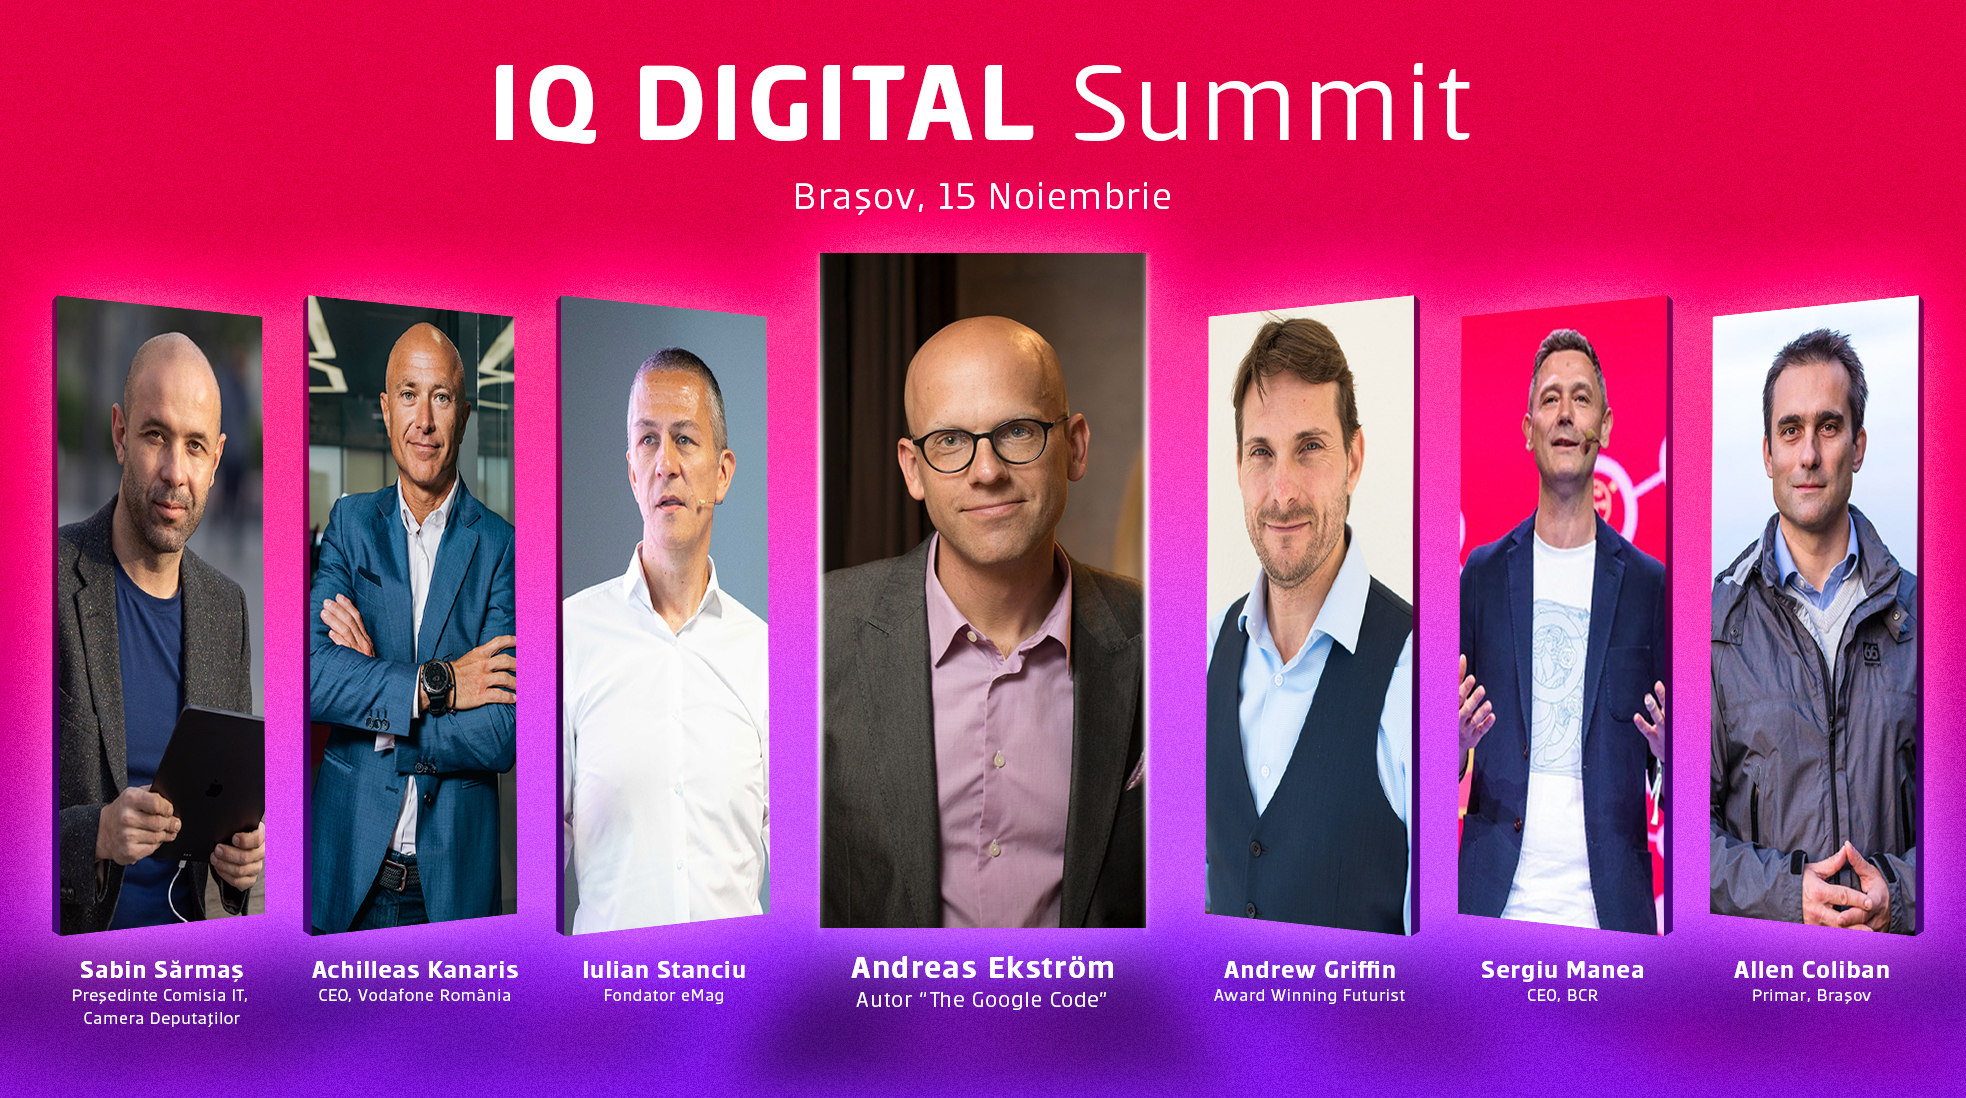 Echipa Upgrade 100, împreună cu BCR și Vodafone, îi aduc la IQ DIGITAL Summit Brașov pe consultantul Andreas Ekstrom și futurologul Matthew Griffin cu noi perspective despre digitalizare și planificare de business